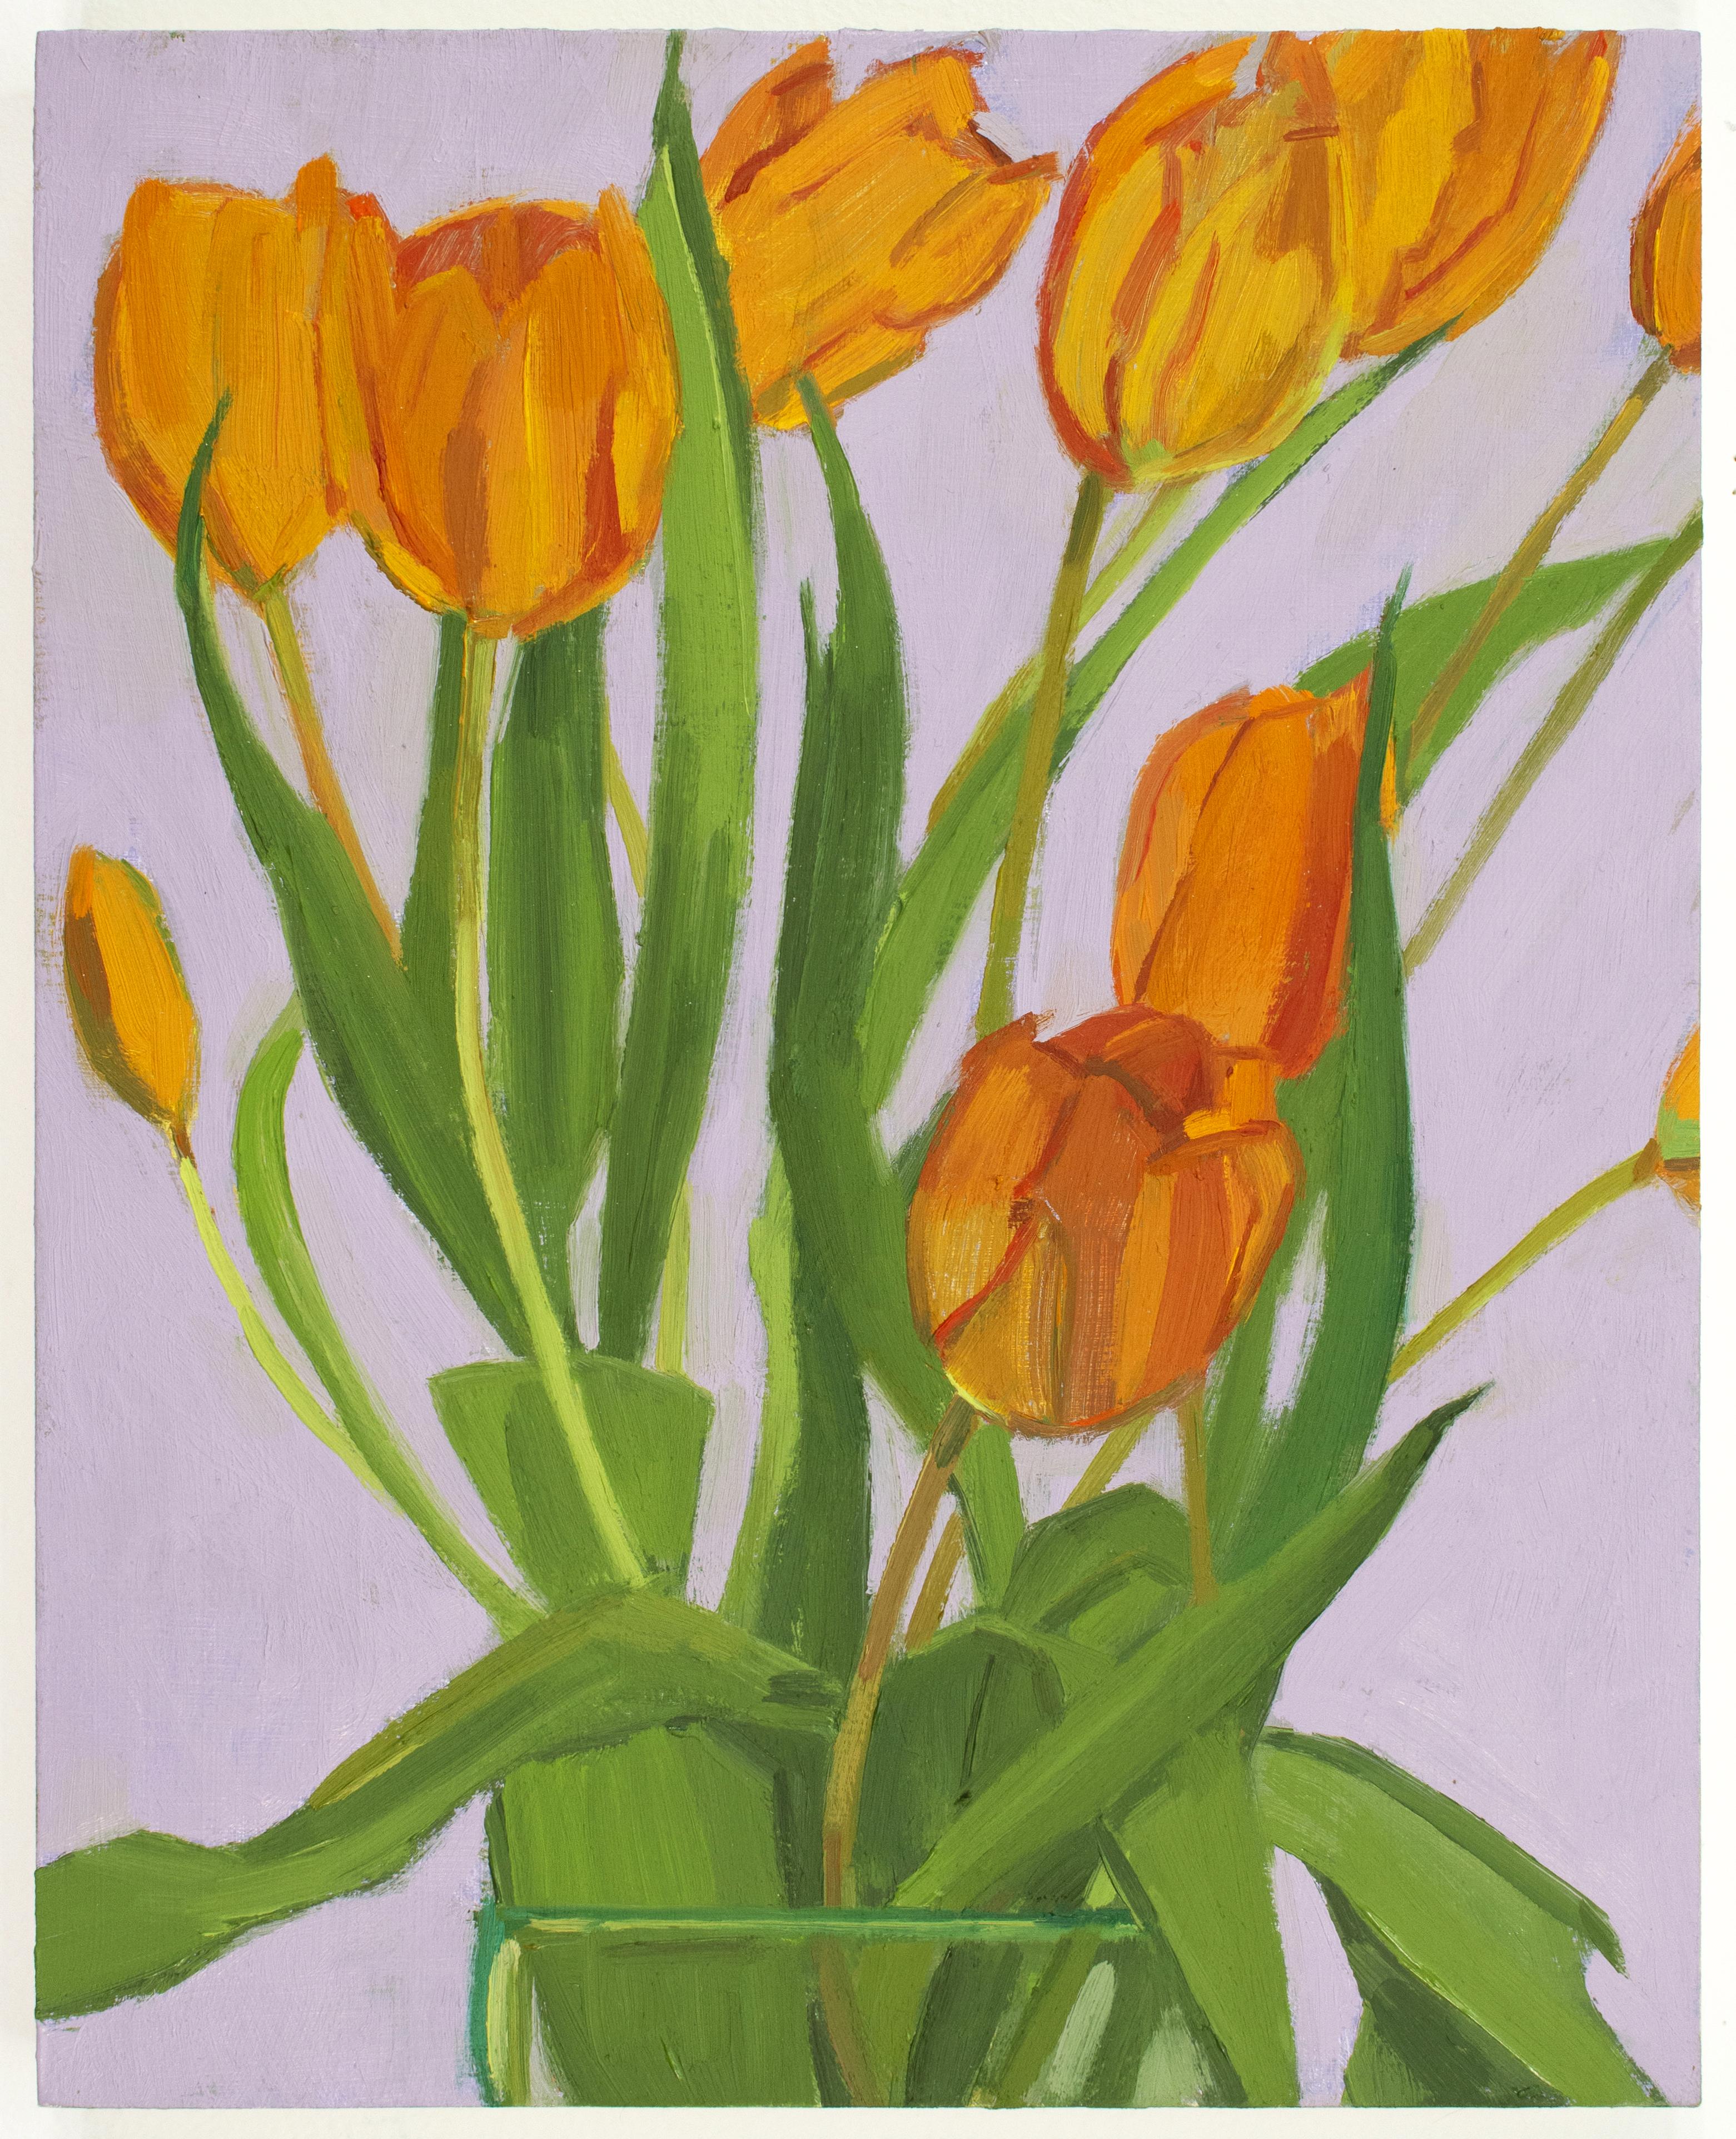 'Orange Tulips' - still life - floral, botanical, naturalism, bright colors - Painting by Christina Renfer Vogel